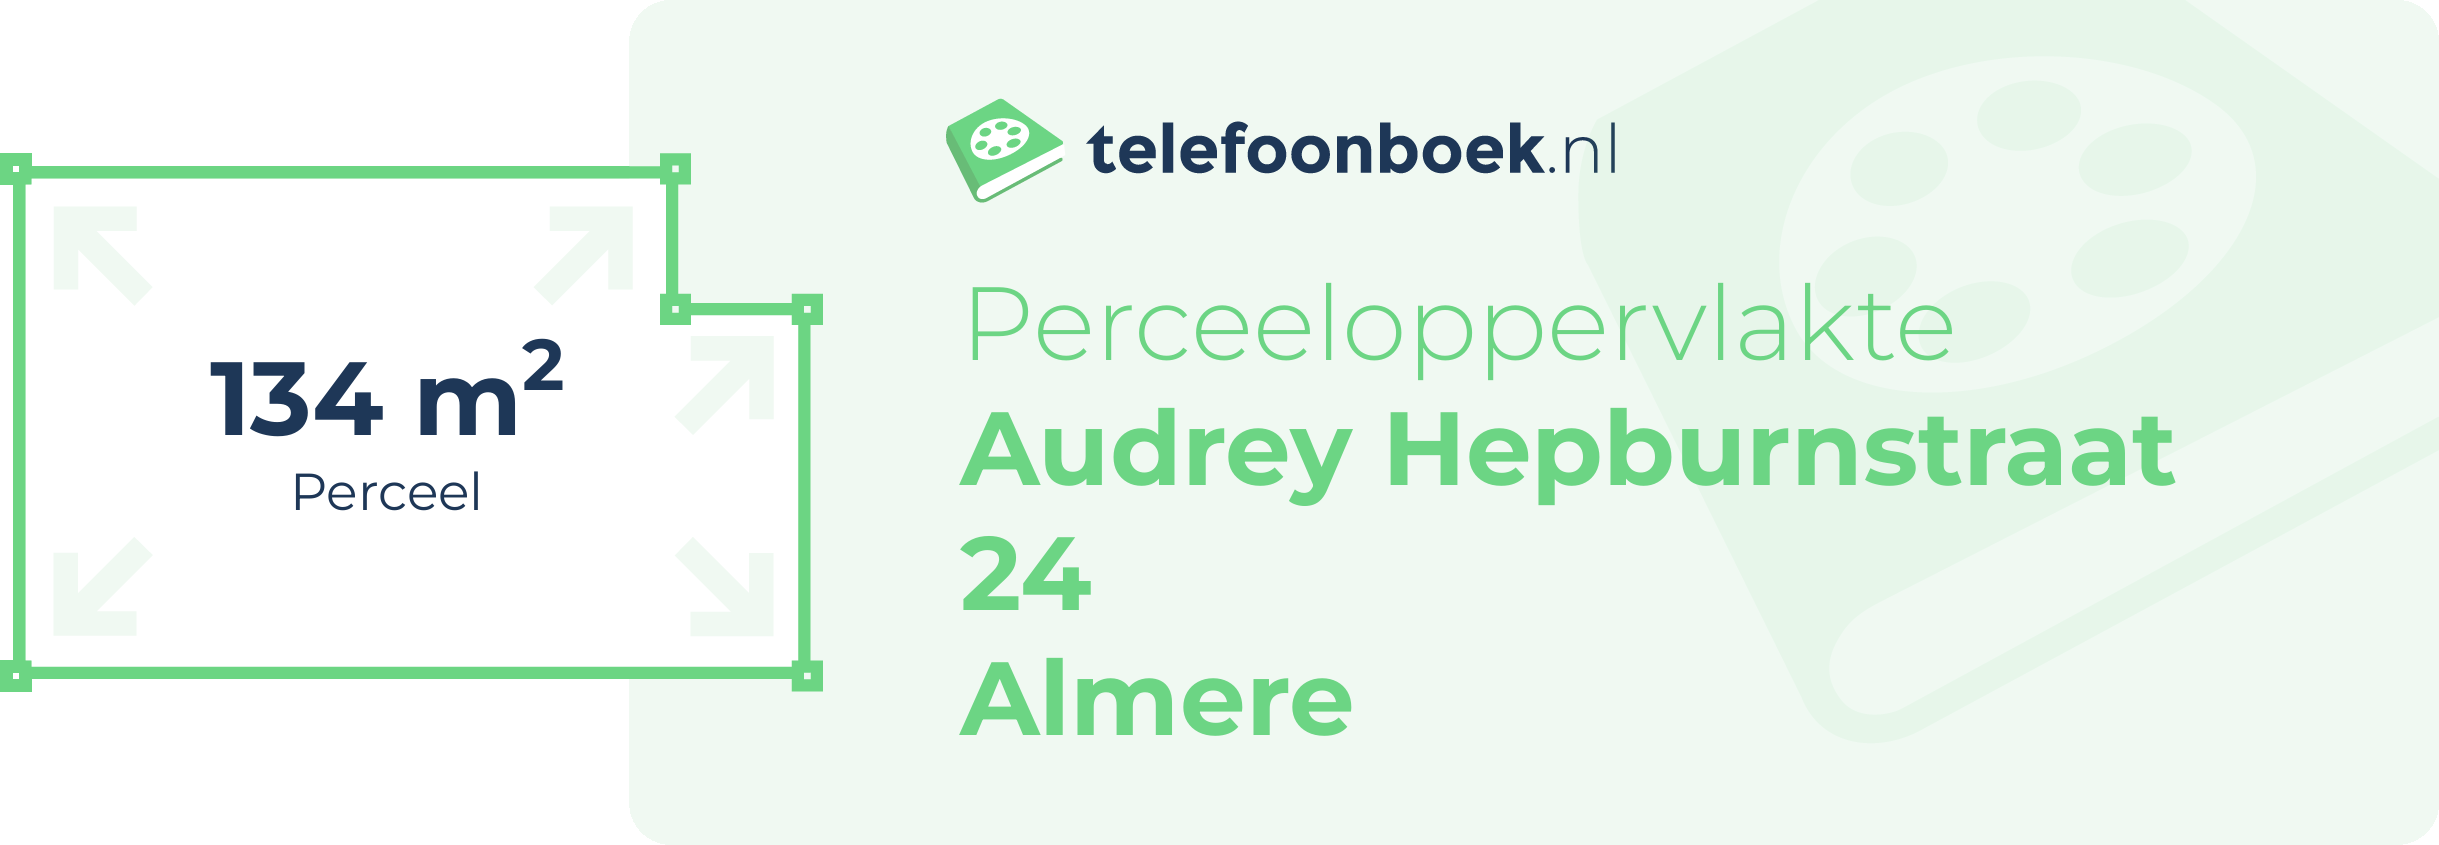 Perceeloppervlakte Audrey Hepburnstraat 24 Almere